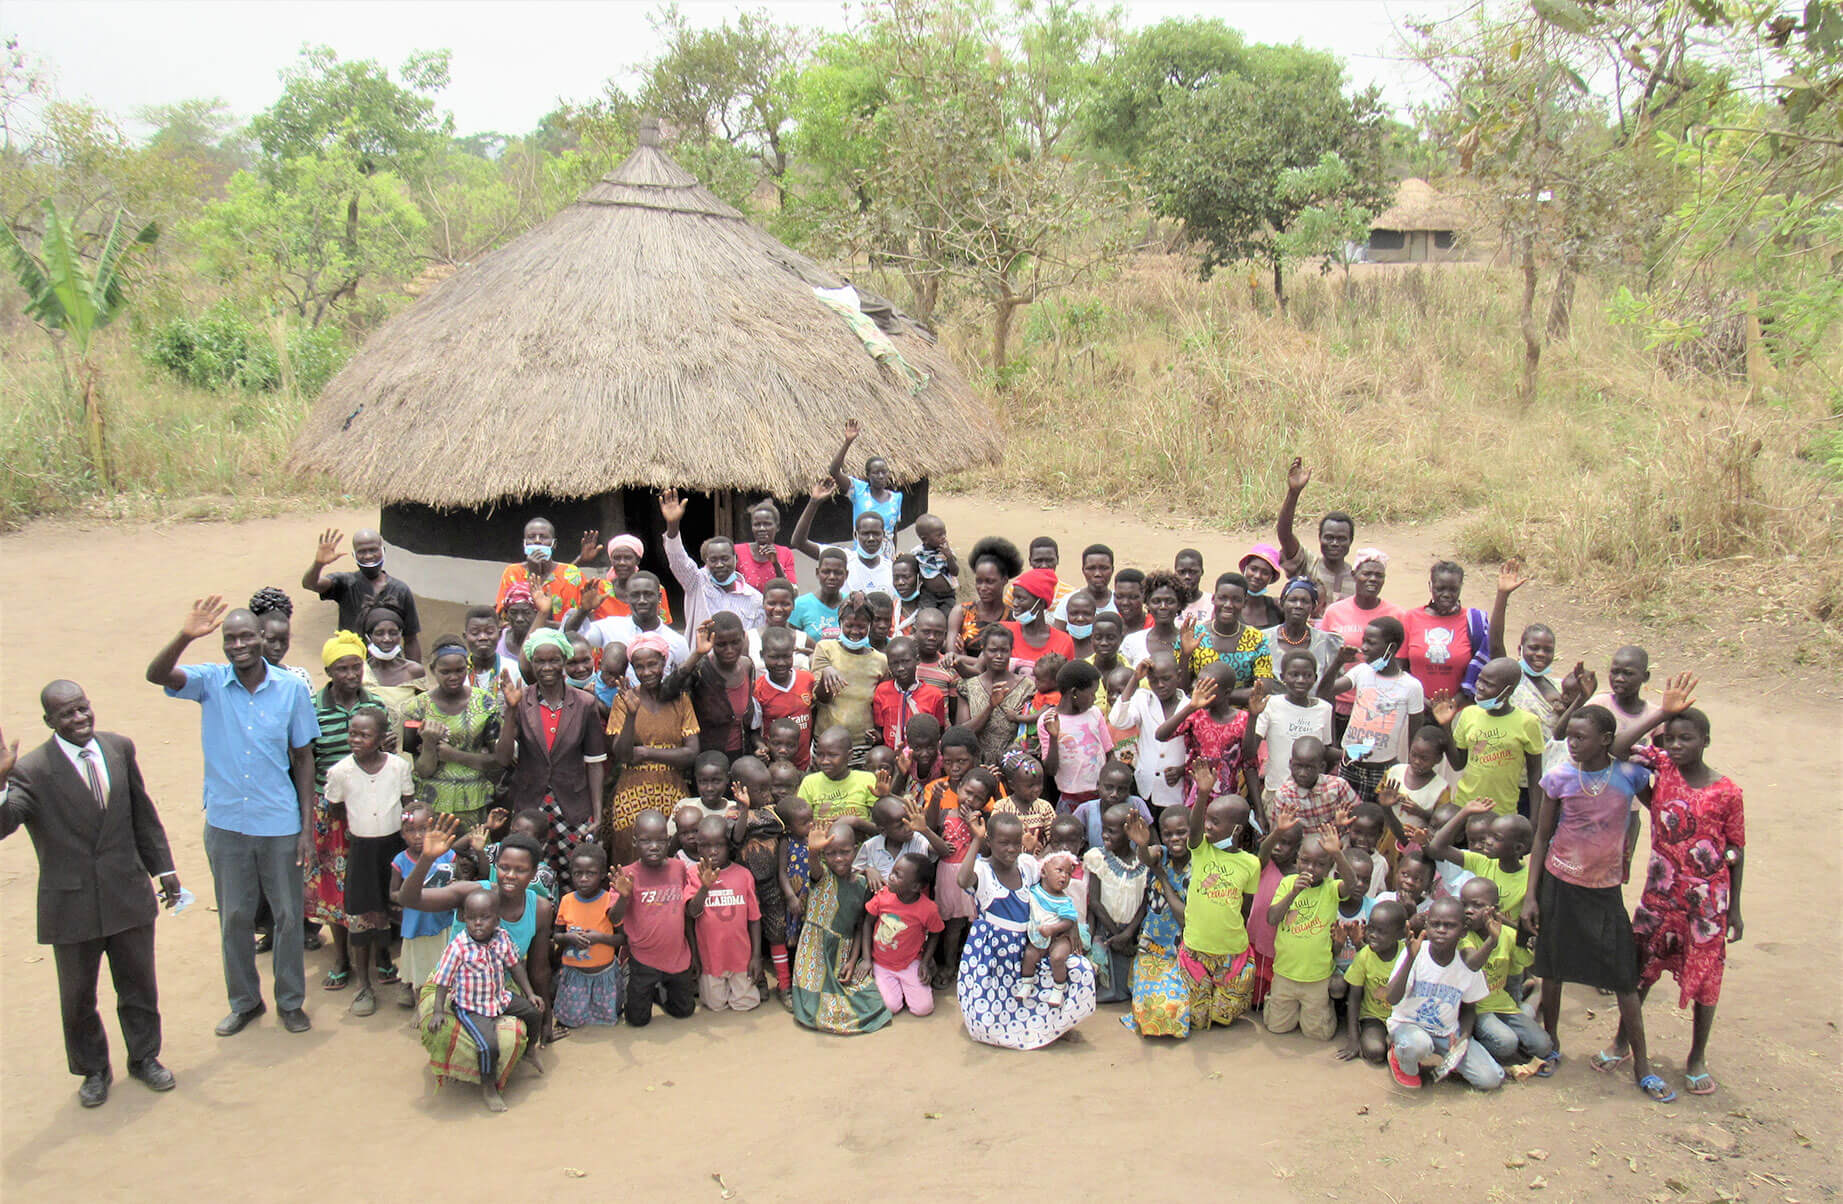 New church group in Uganda